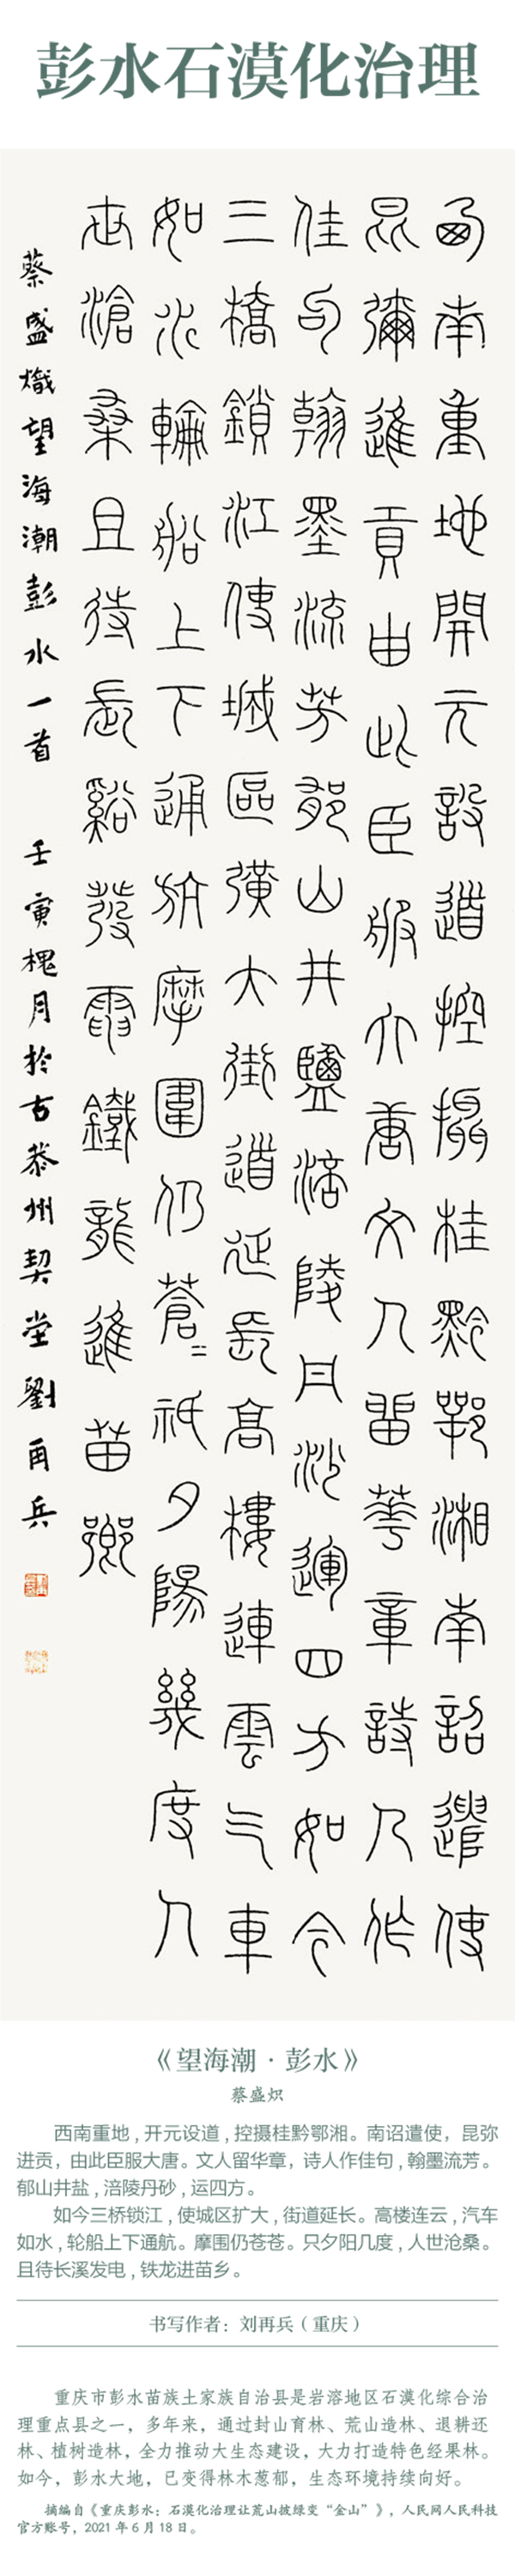 中國書協主題創作書法系列展——美麗中國插圖17題字網